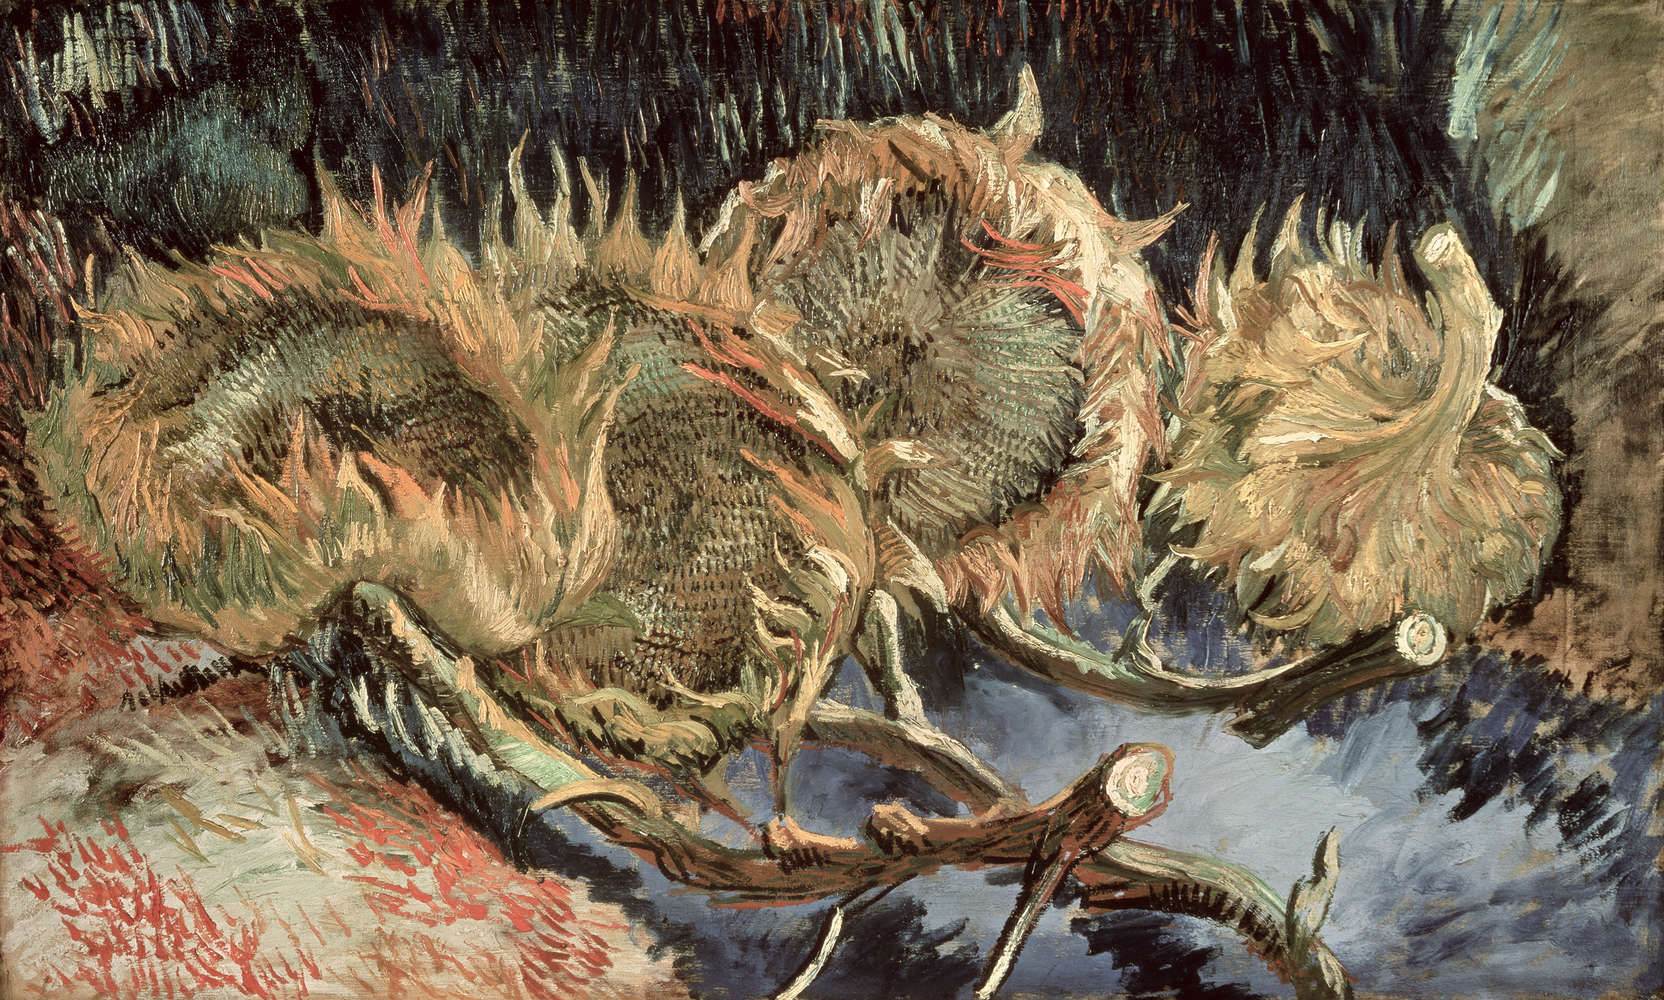             Vier verwelkte zonnebloemen" muurschildering van Vincent van Gogh
        